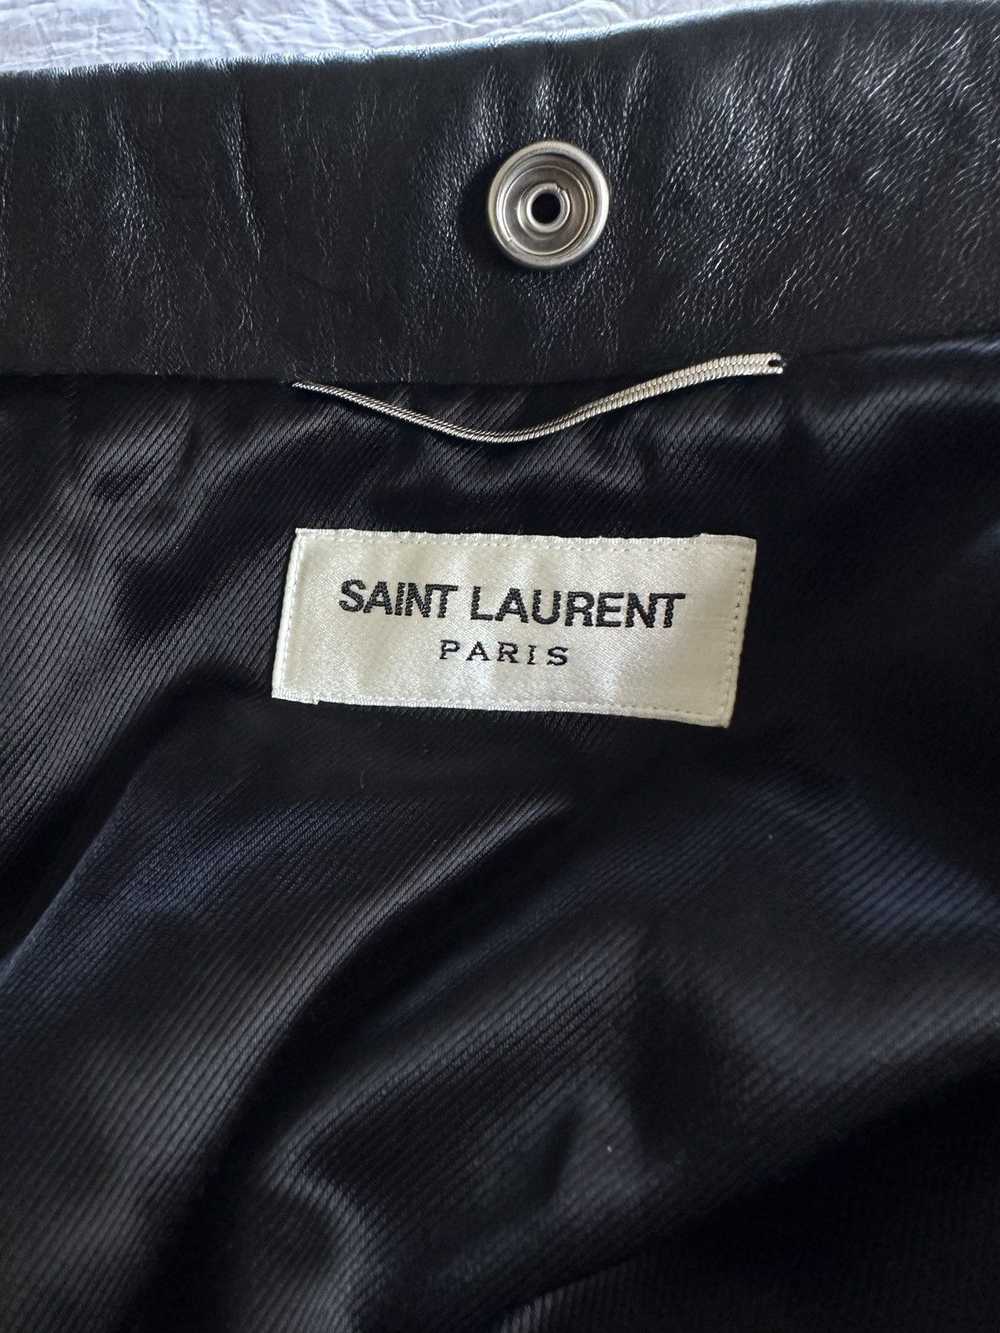 Saint Laurent Paris NEED GONE TODAY* 2016 “YSL” L… - image 3